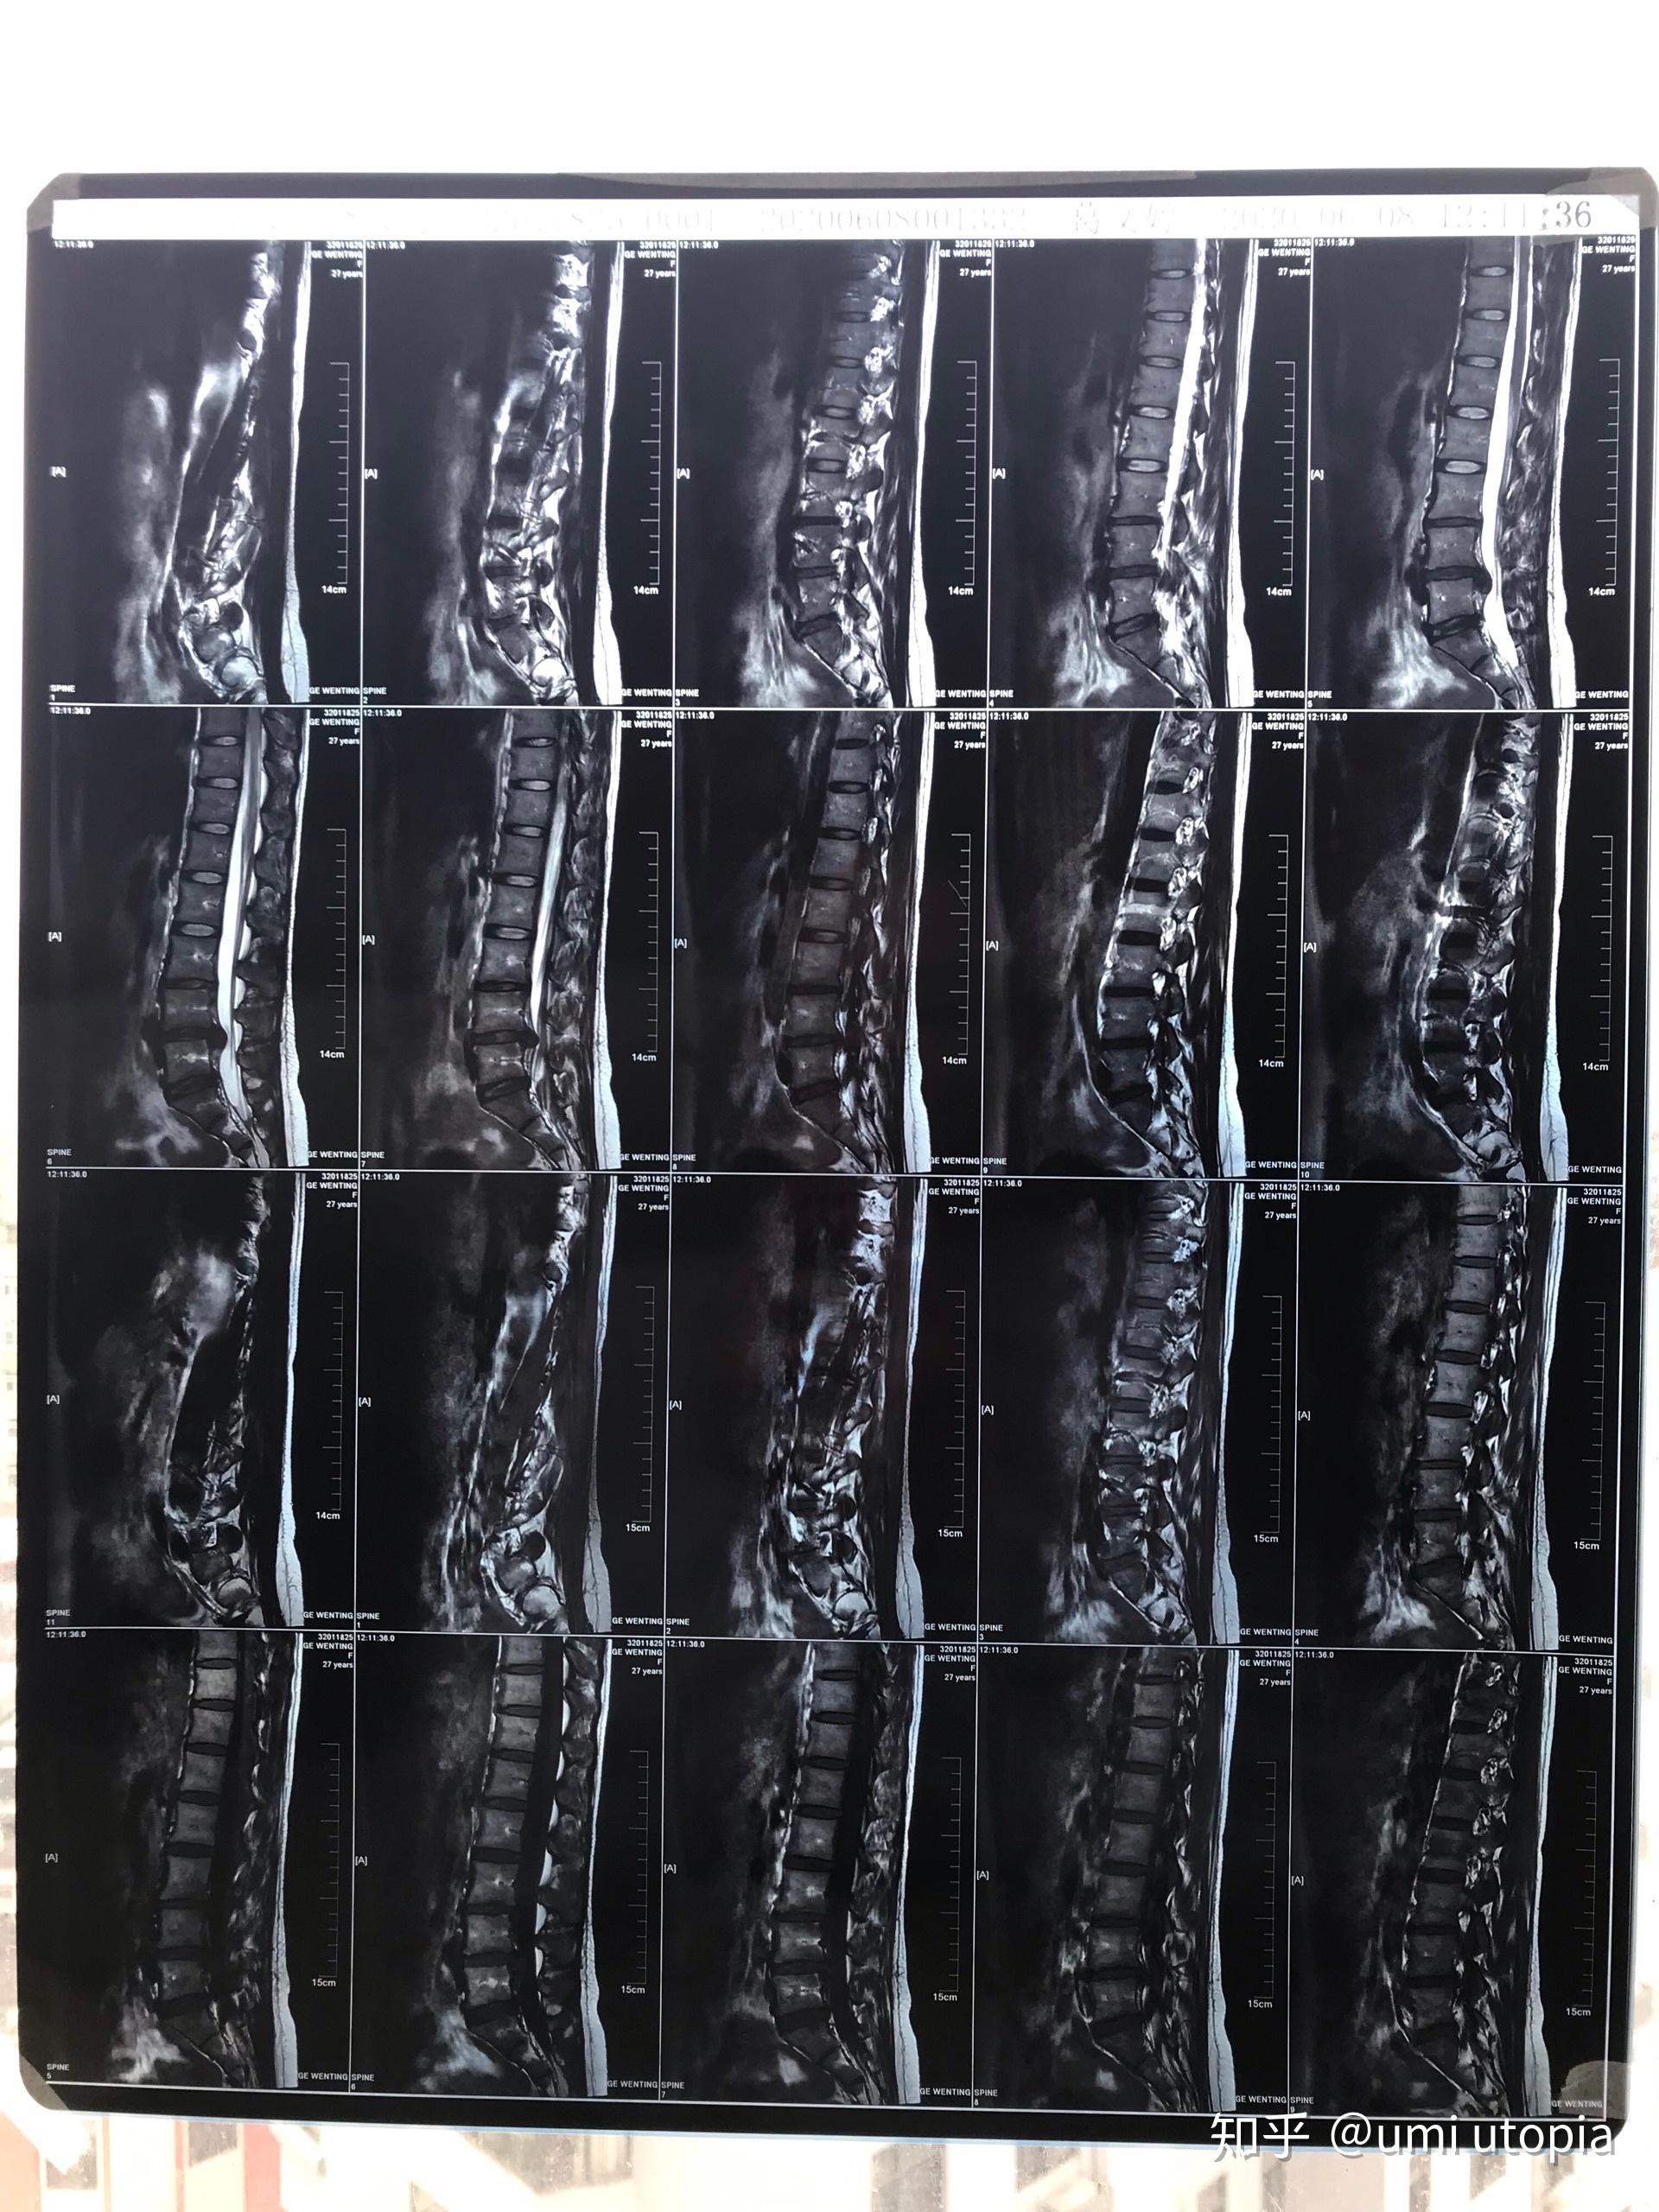 27岁,腰椎间盘l5s1突出压迫右侧神经,附核磁共振,到要手术的程度了吗?